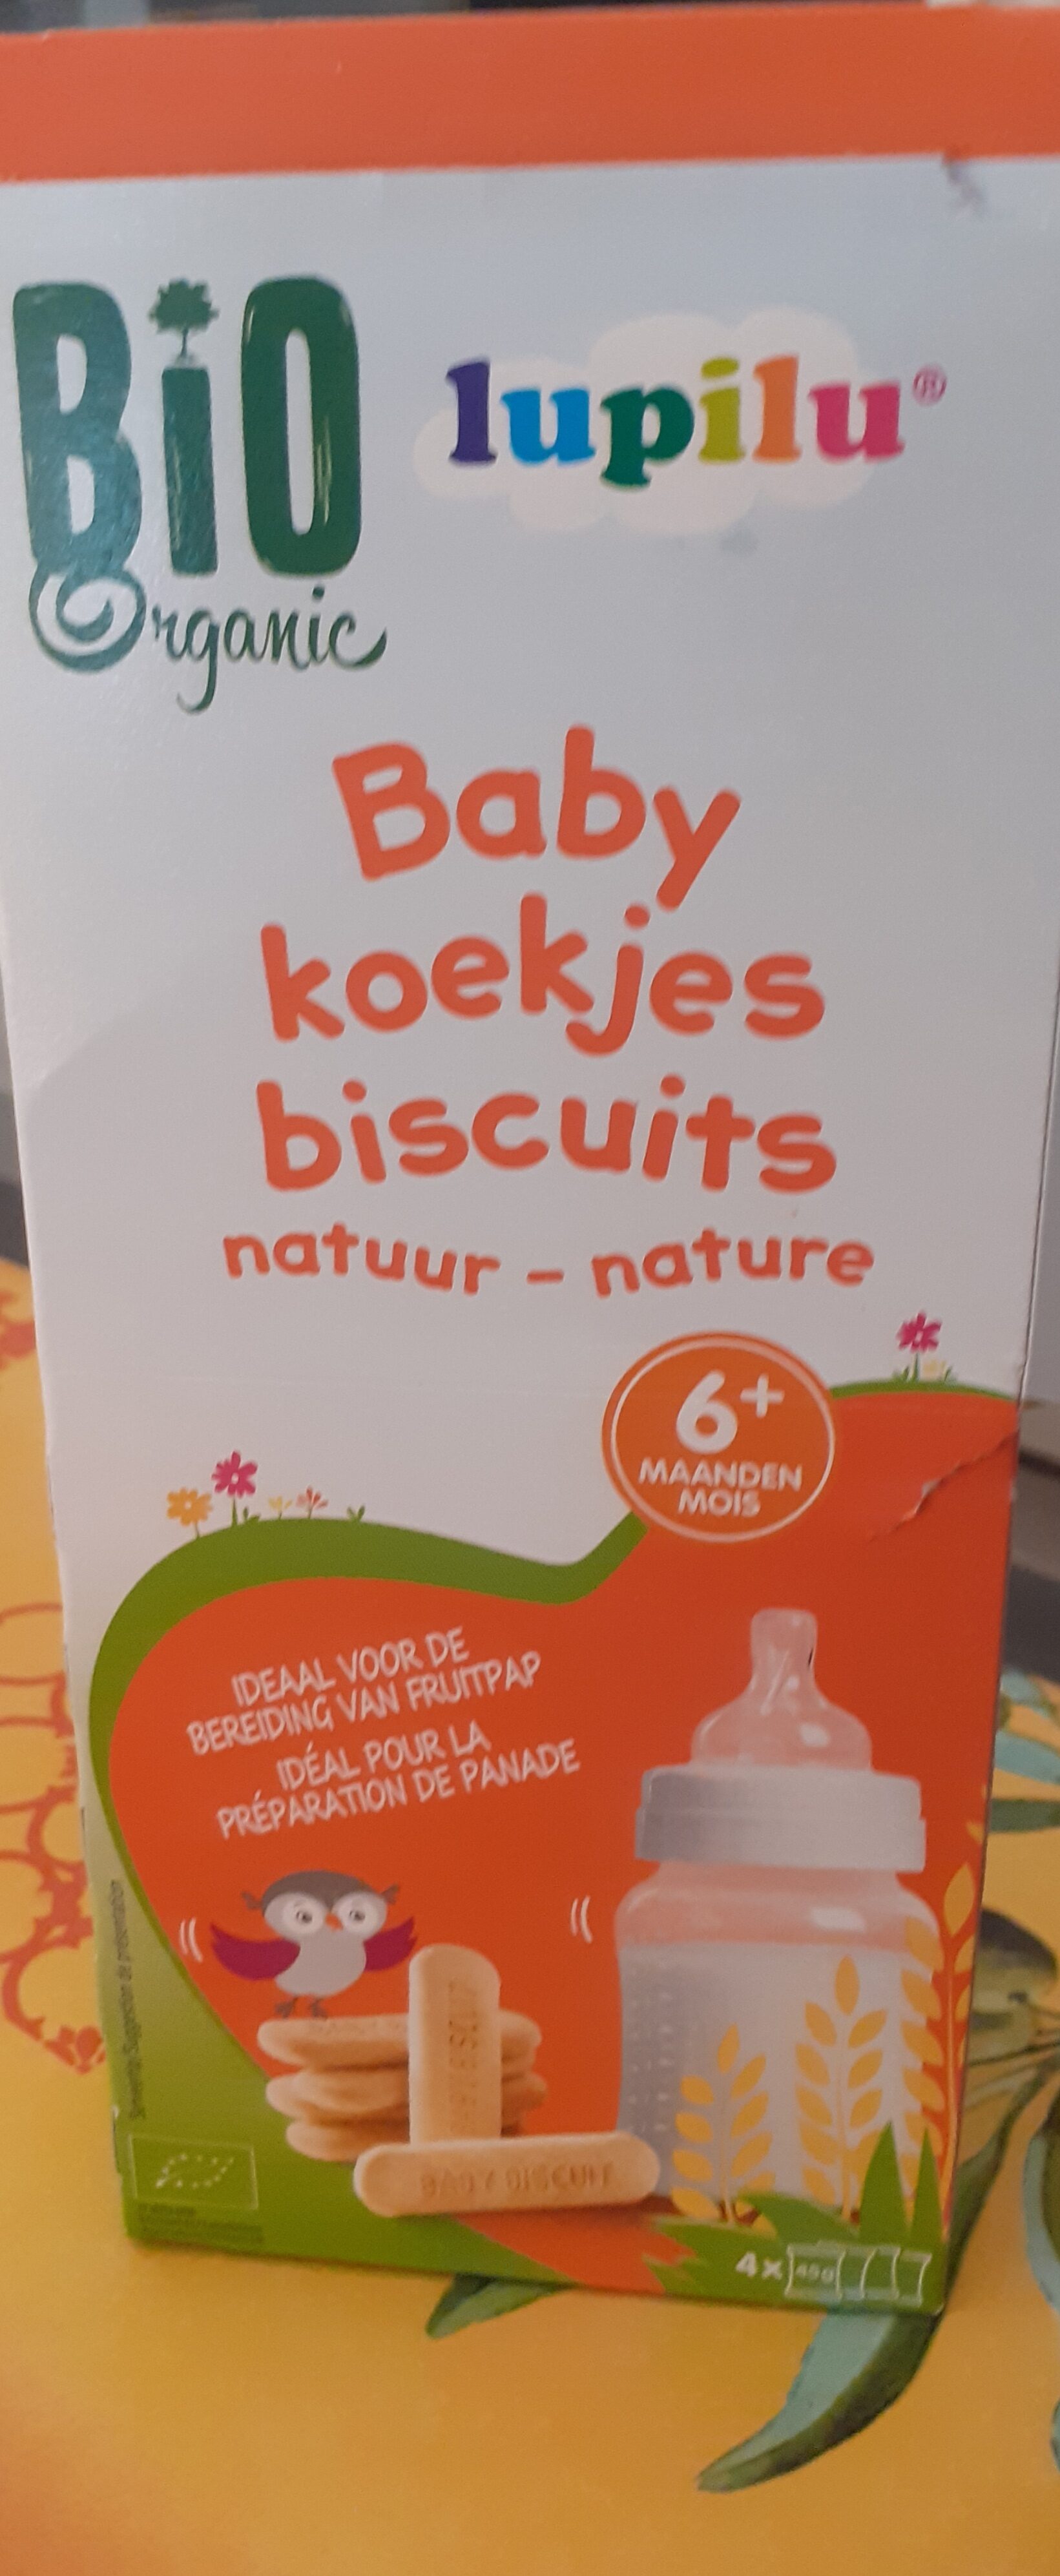 Lupilu biscuits pour bébés nature - Produit